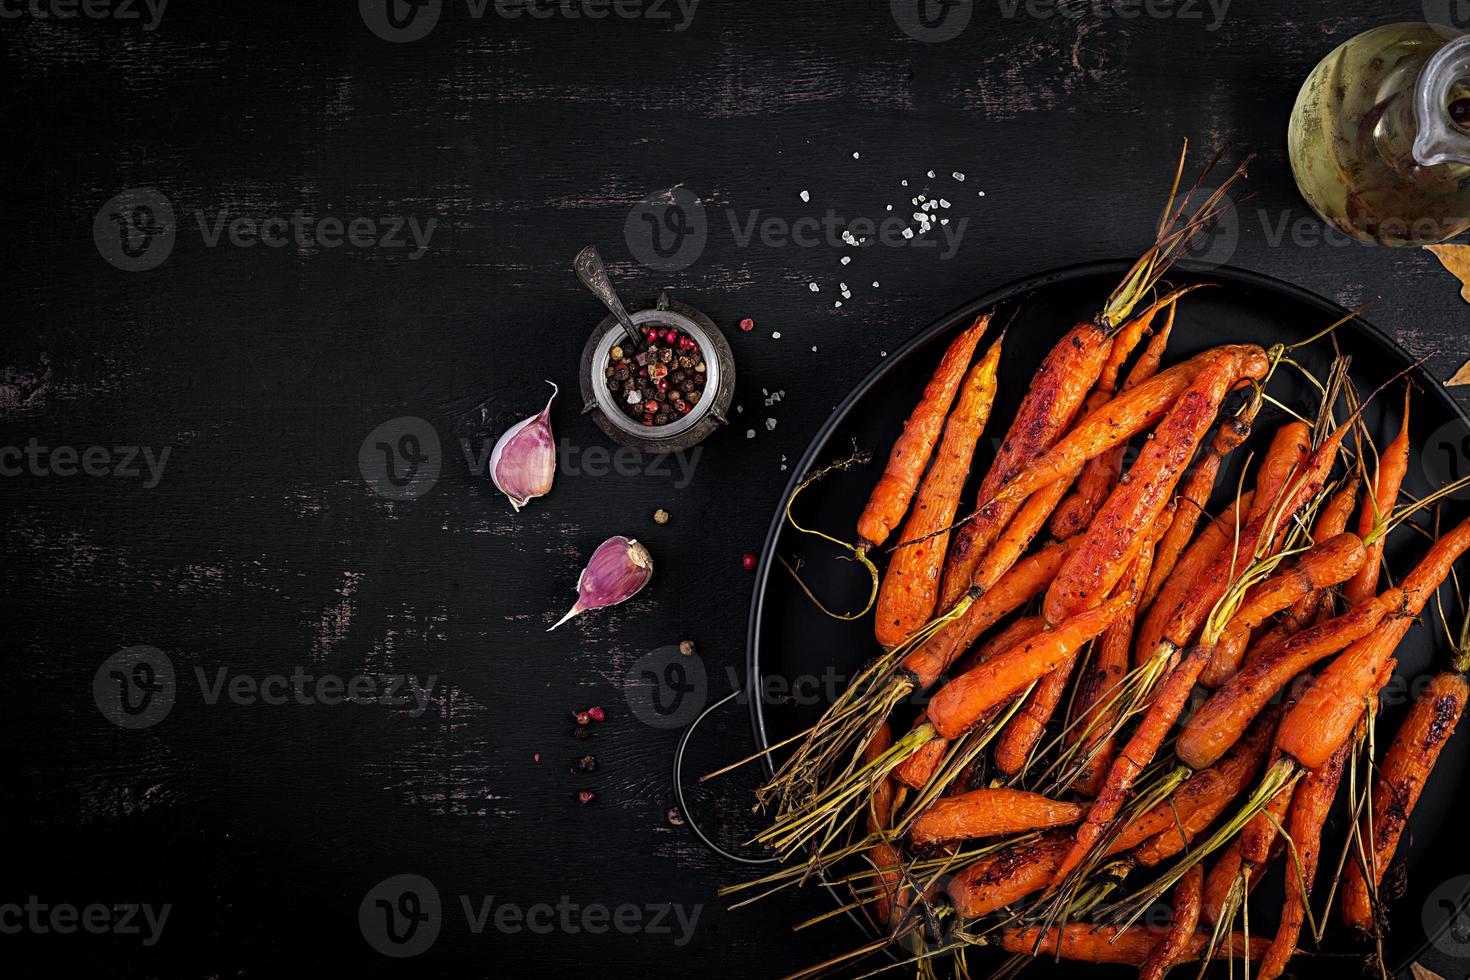 gebakken biologisch wortels met tijm, honing en citroen. biologisch veganistisch voedsel. top visie foto